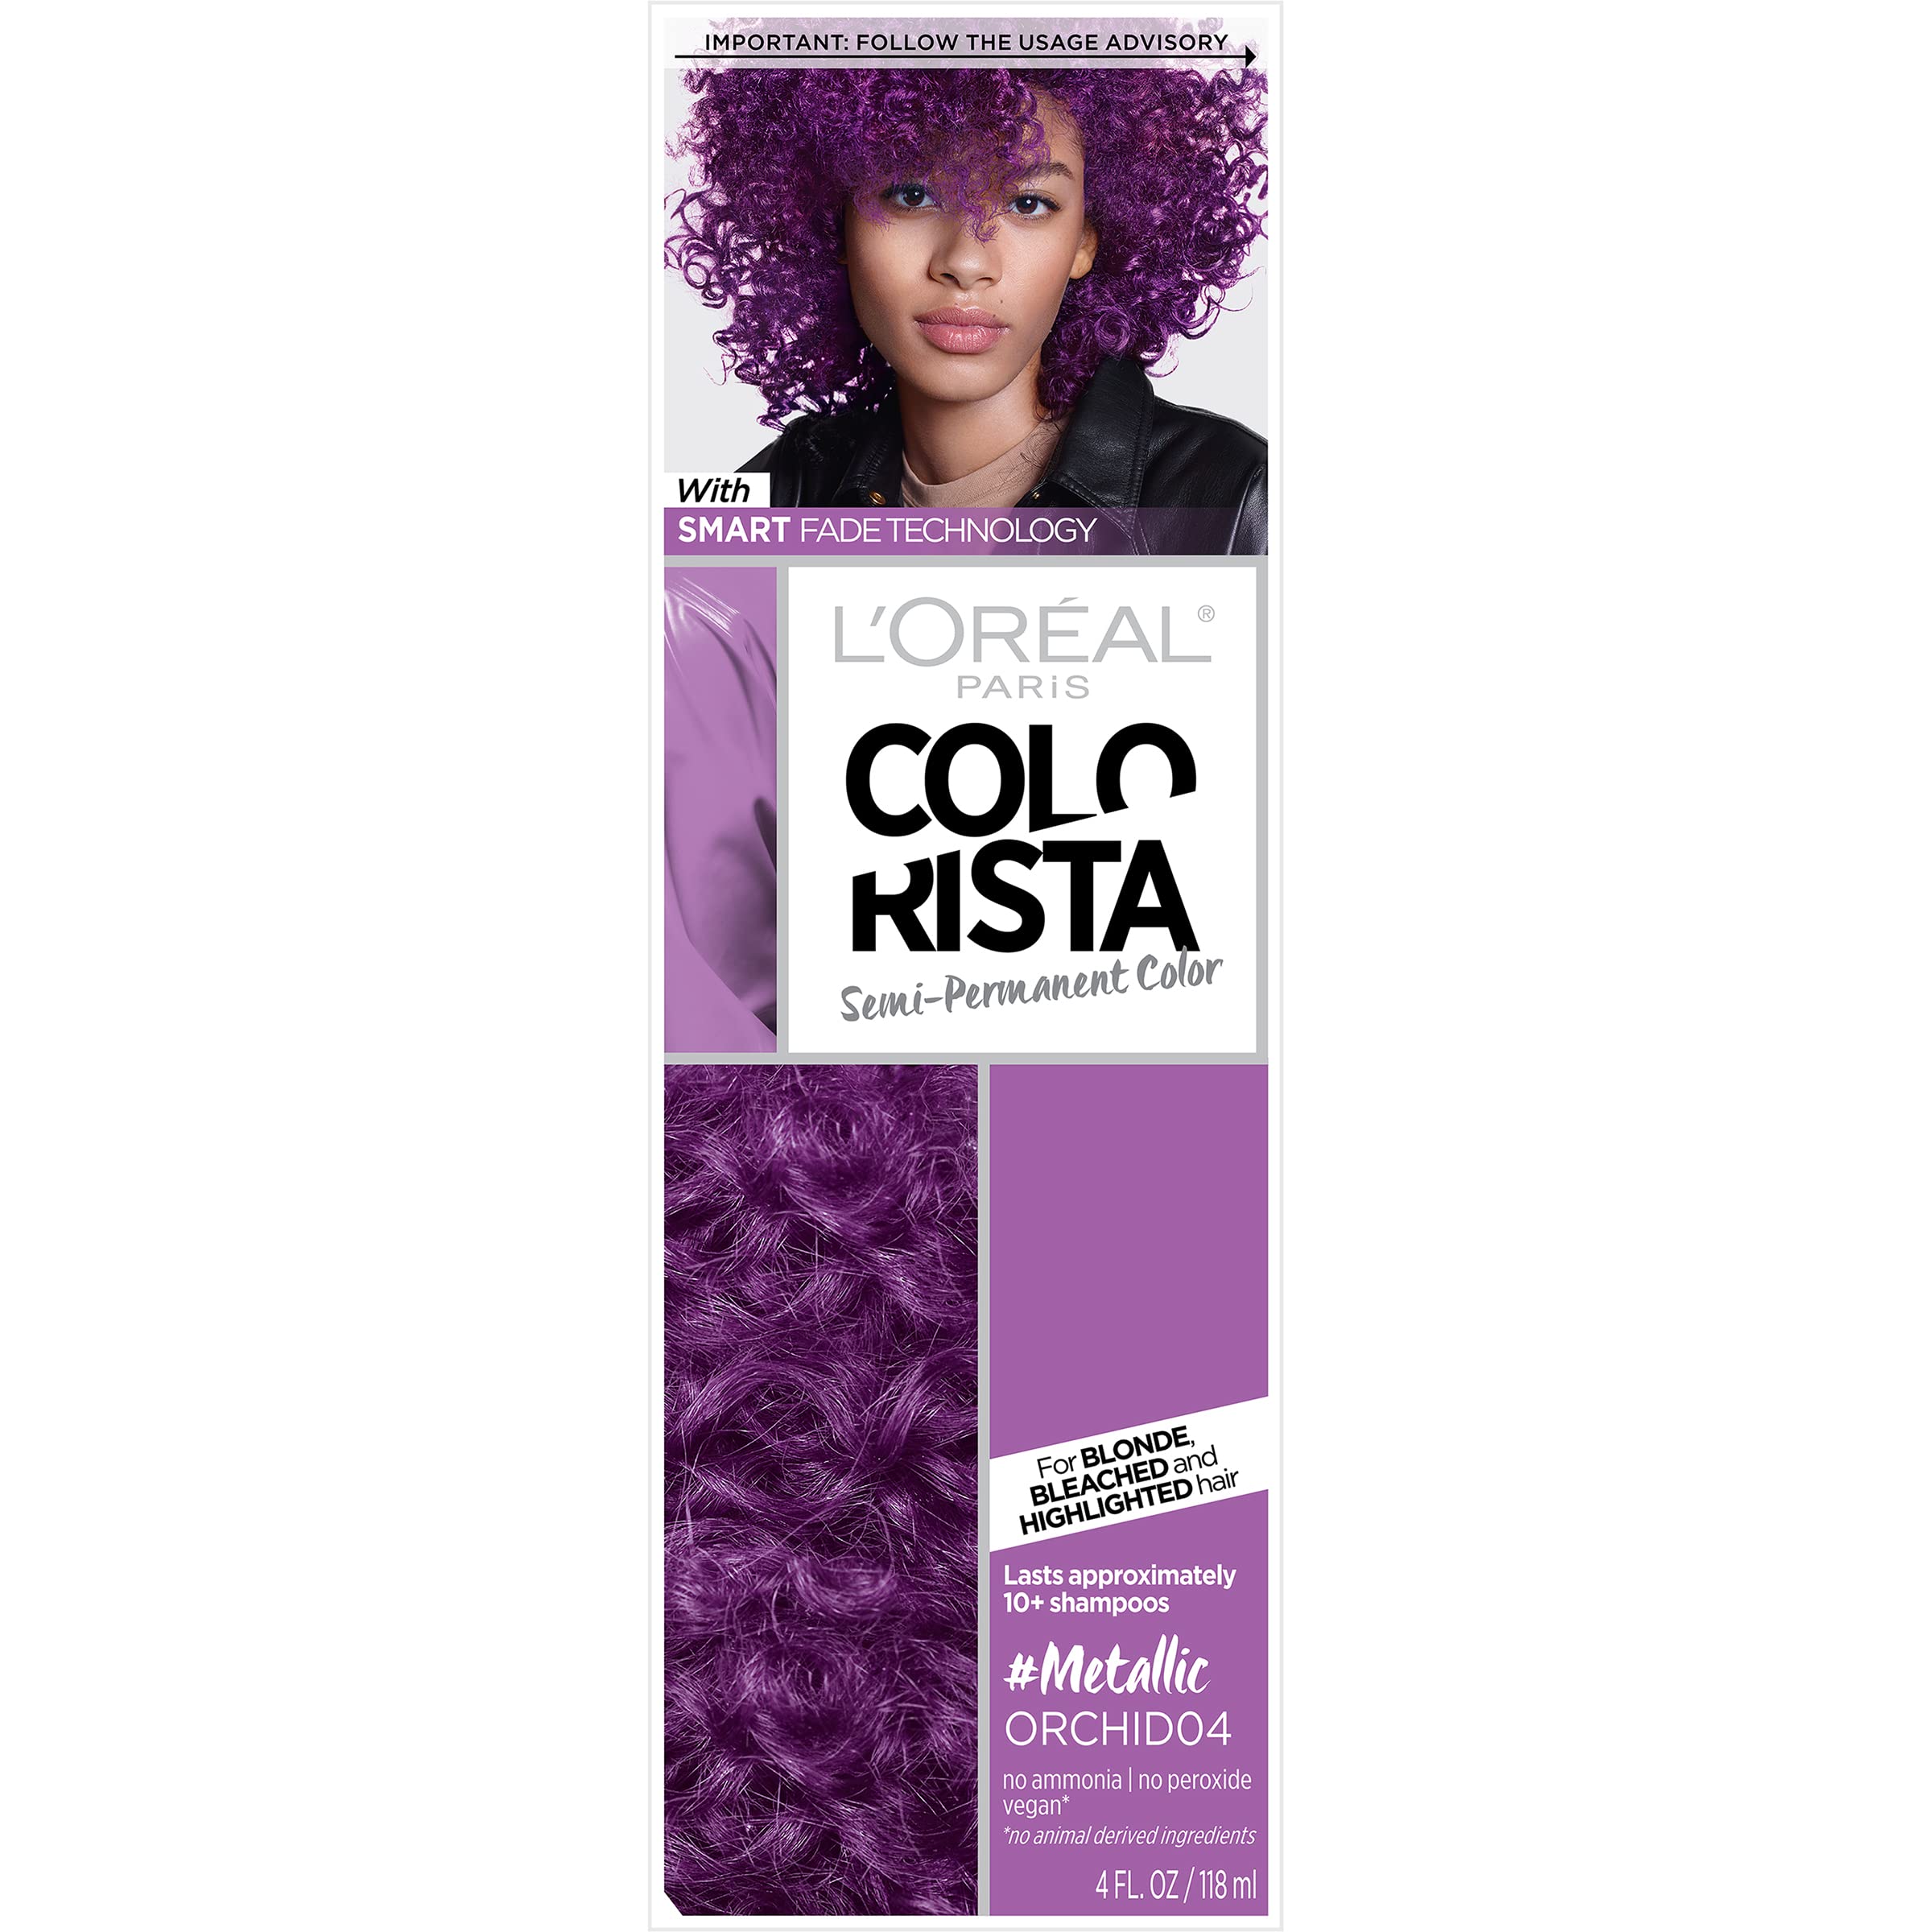 L’Oréal Paris Colorista Metallic Semi Permanent Hair Color Kit for Light Blonde or Bleached Hair, Metallic Orchid Purple